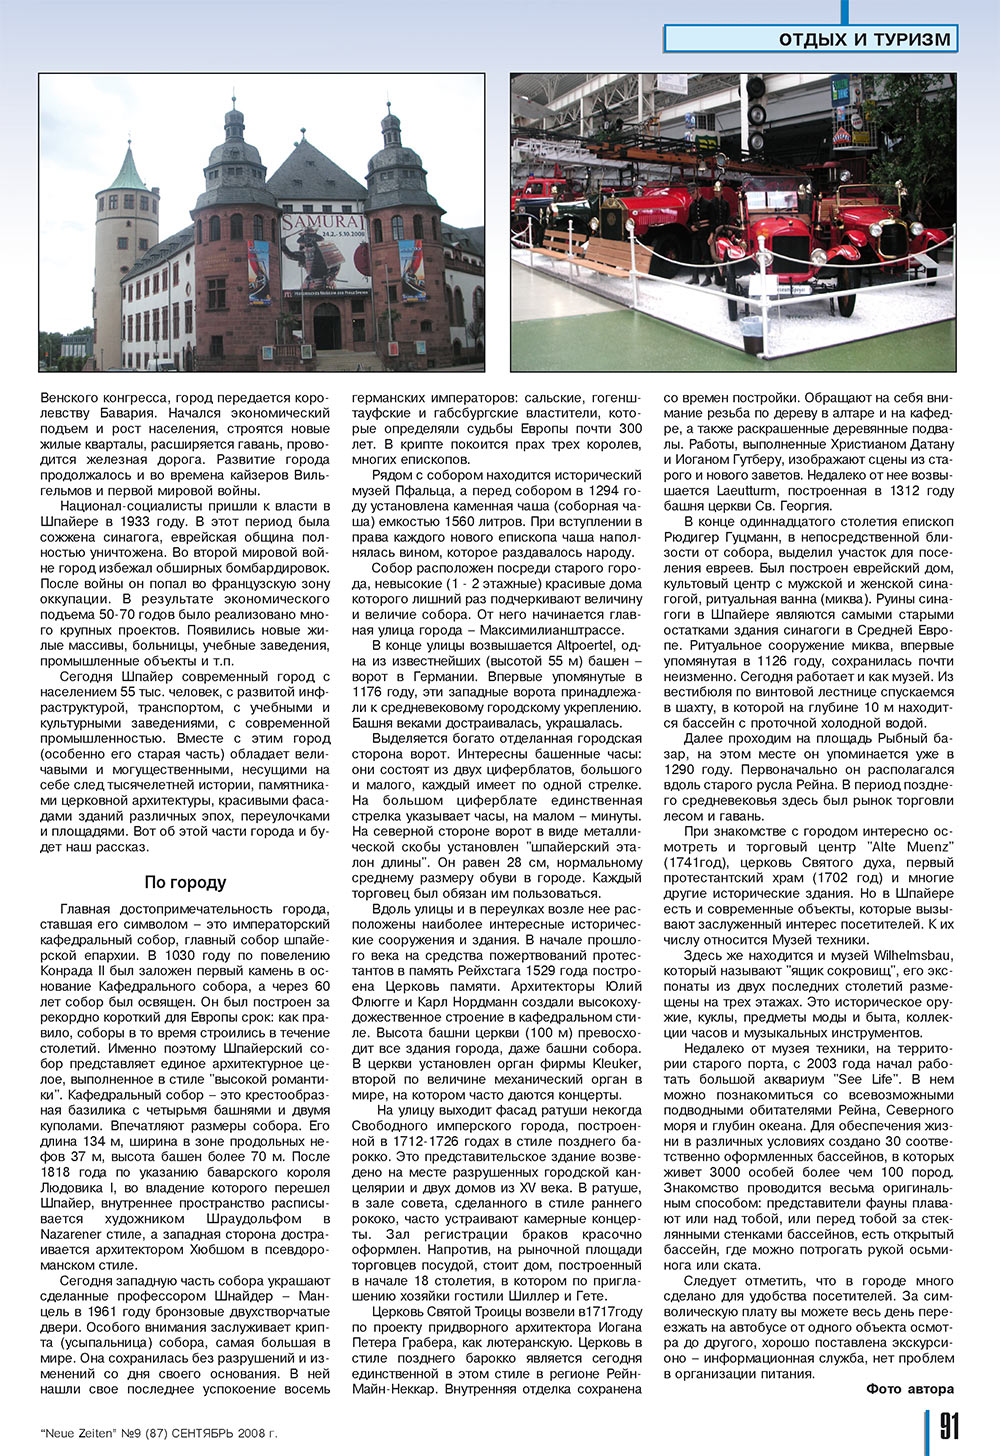 Neue Zeiten, журнал. 2008 №9 стр.91